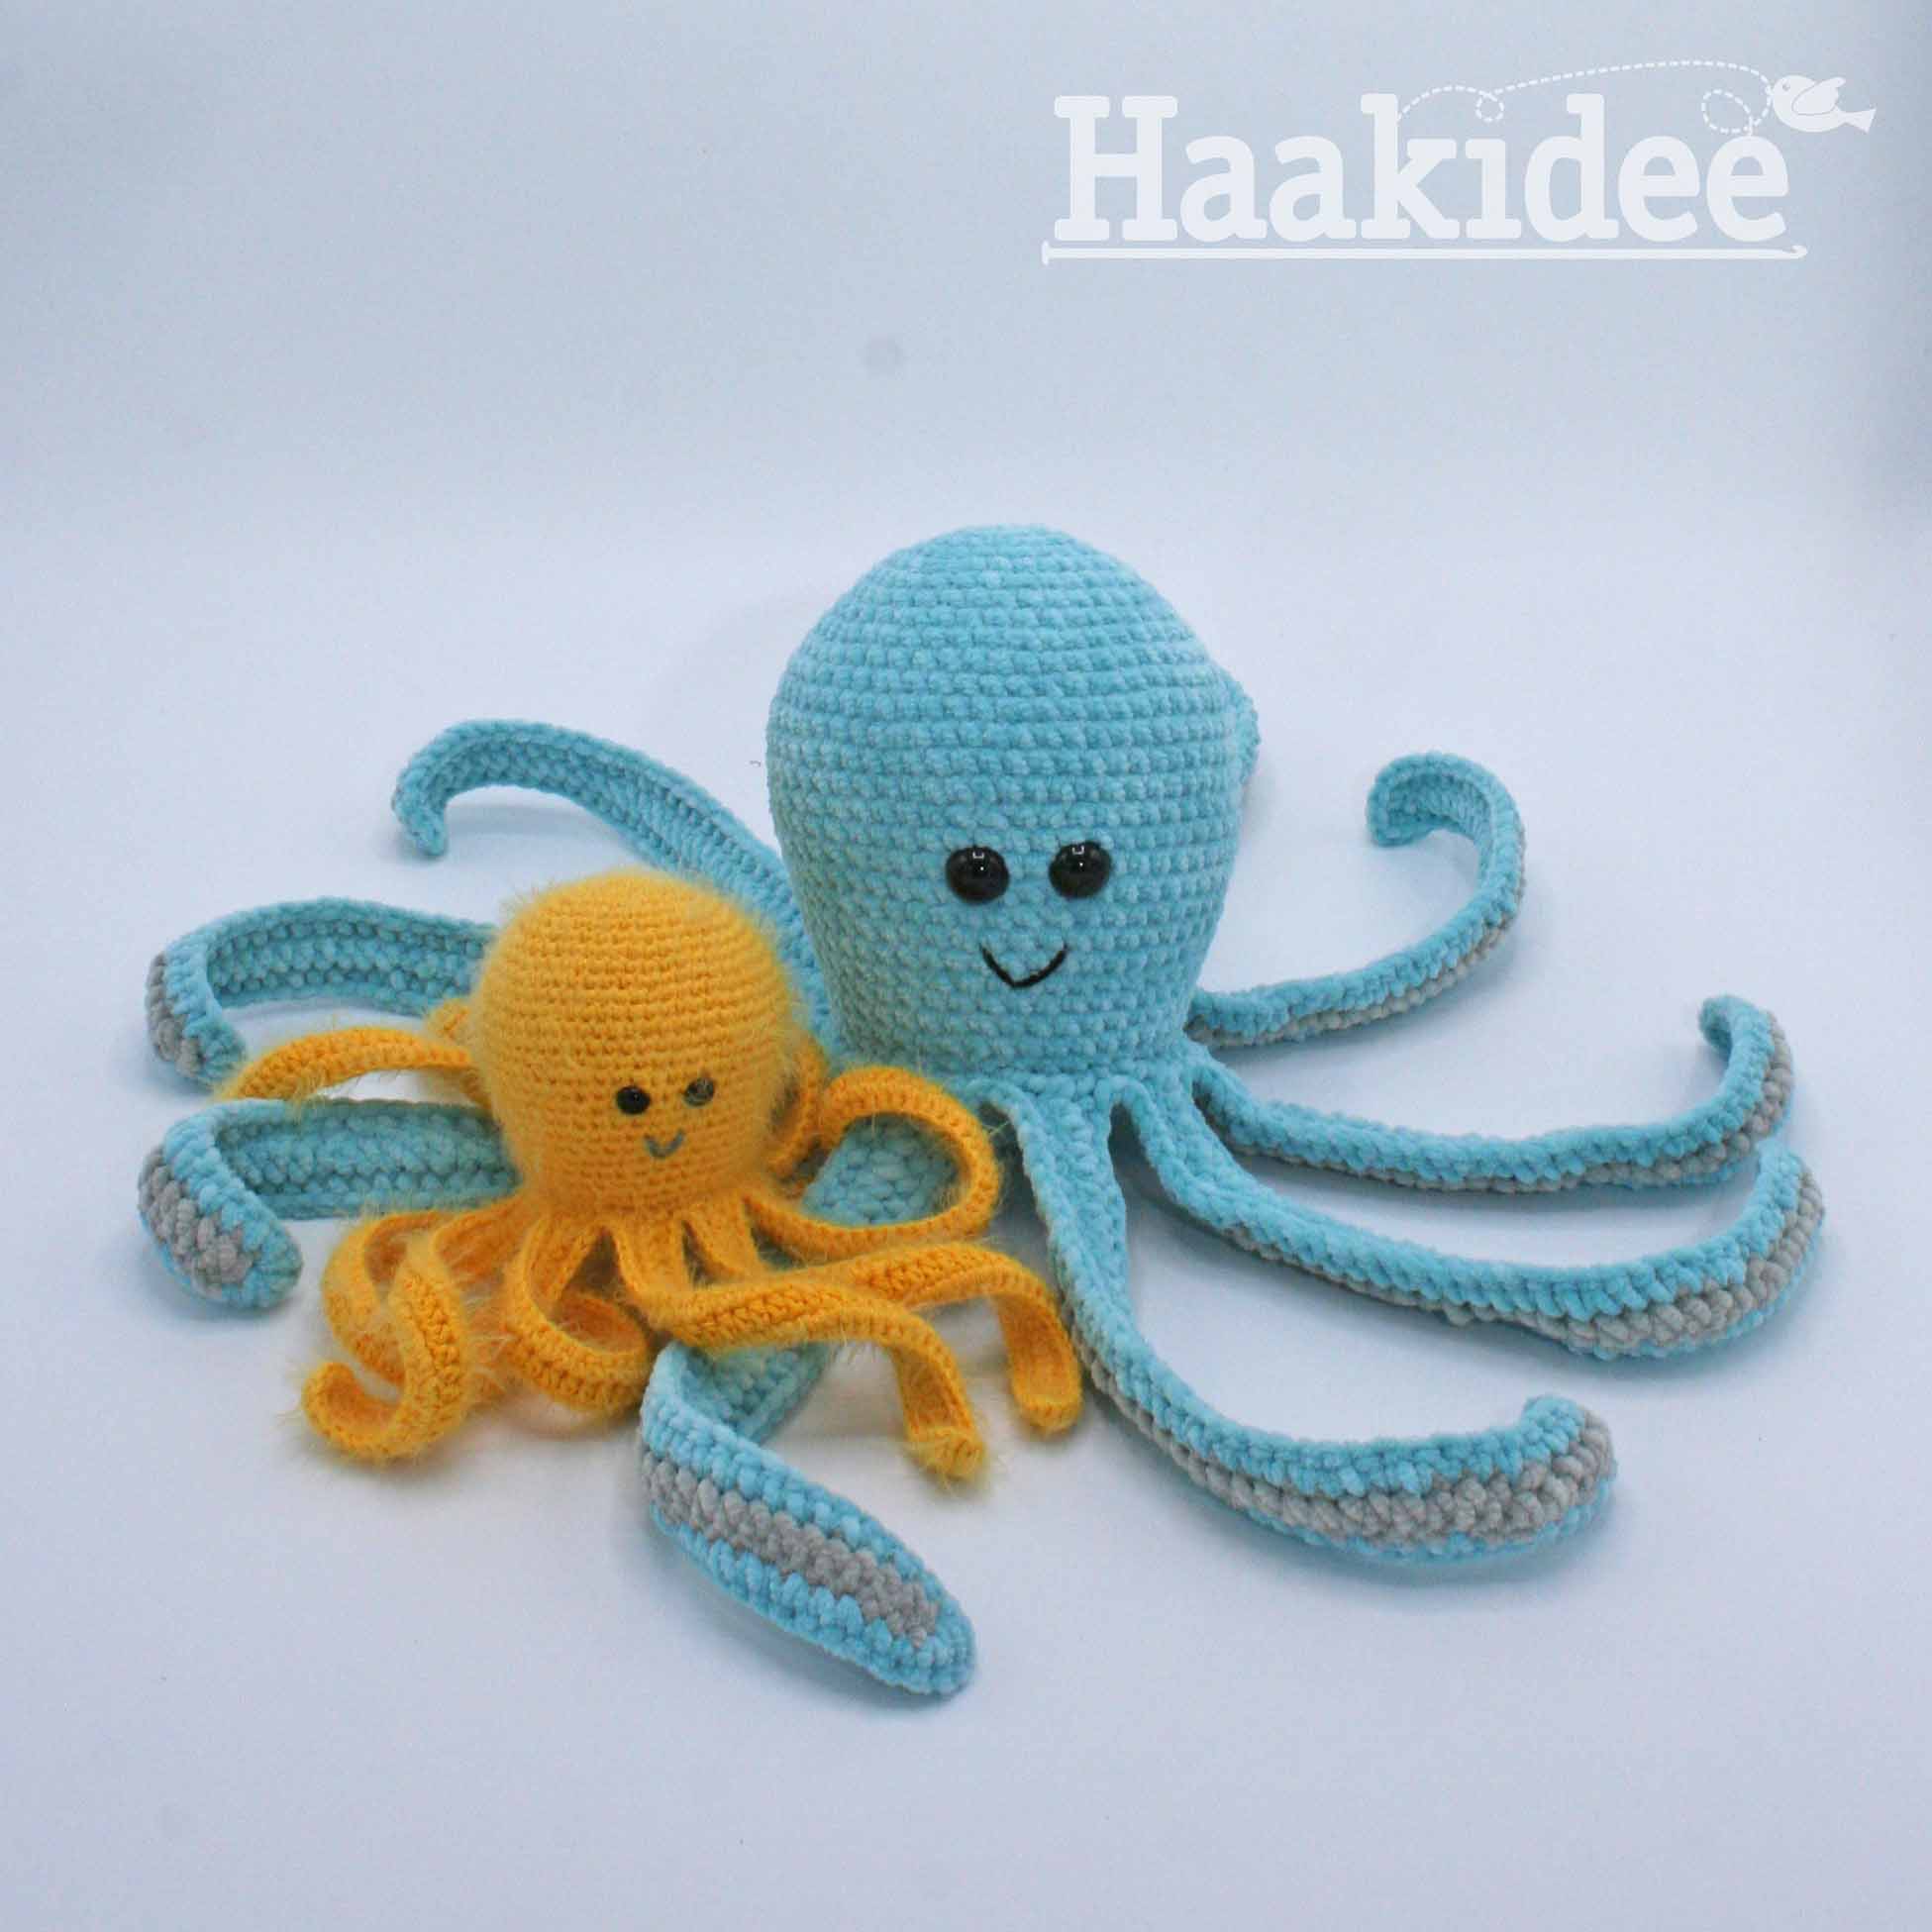 Kinderrijmpjes Motivatie zuiden Haakpatroon Octopus - Haakidee